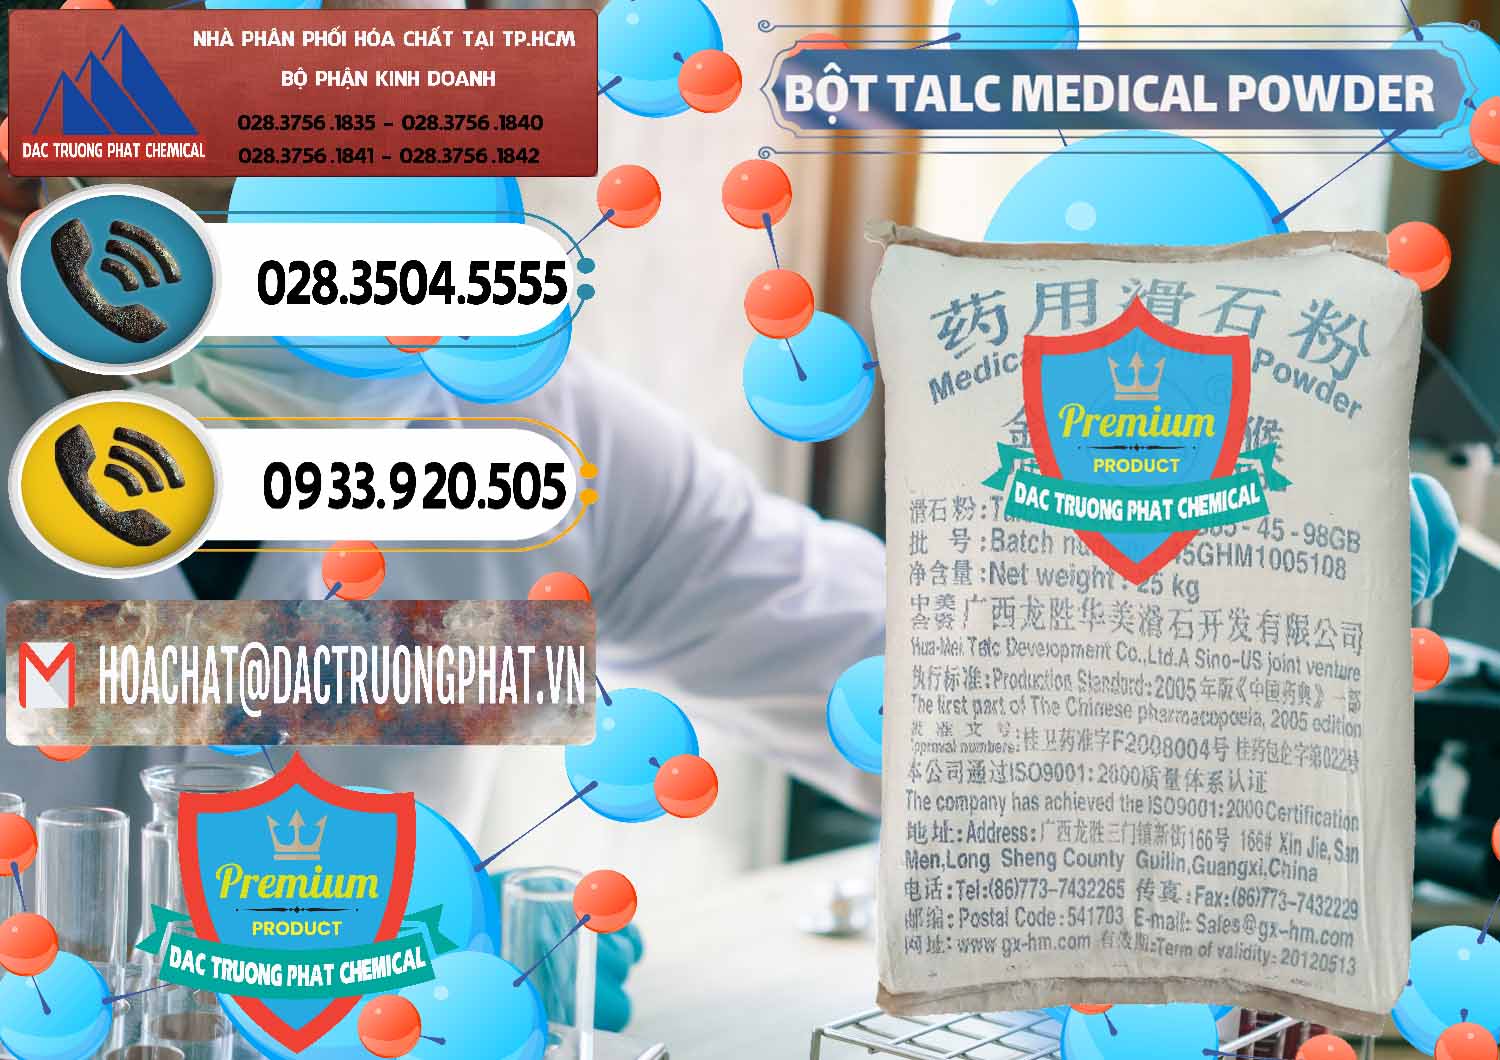 Đơn vị phân phối và bán Bột Talc Medical Powder Trung Quốc China - 0036 - Đơn vị kinh doanh - phân phối hóa chất tại TP.HCM - hoachatdetnhuom.vn